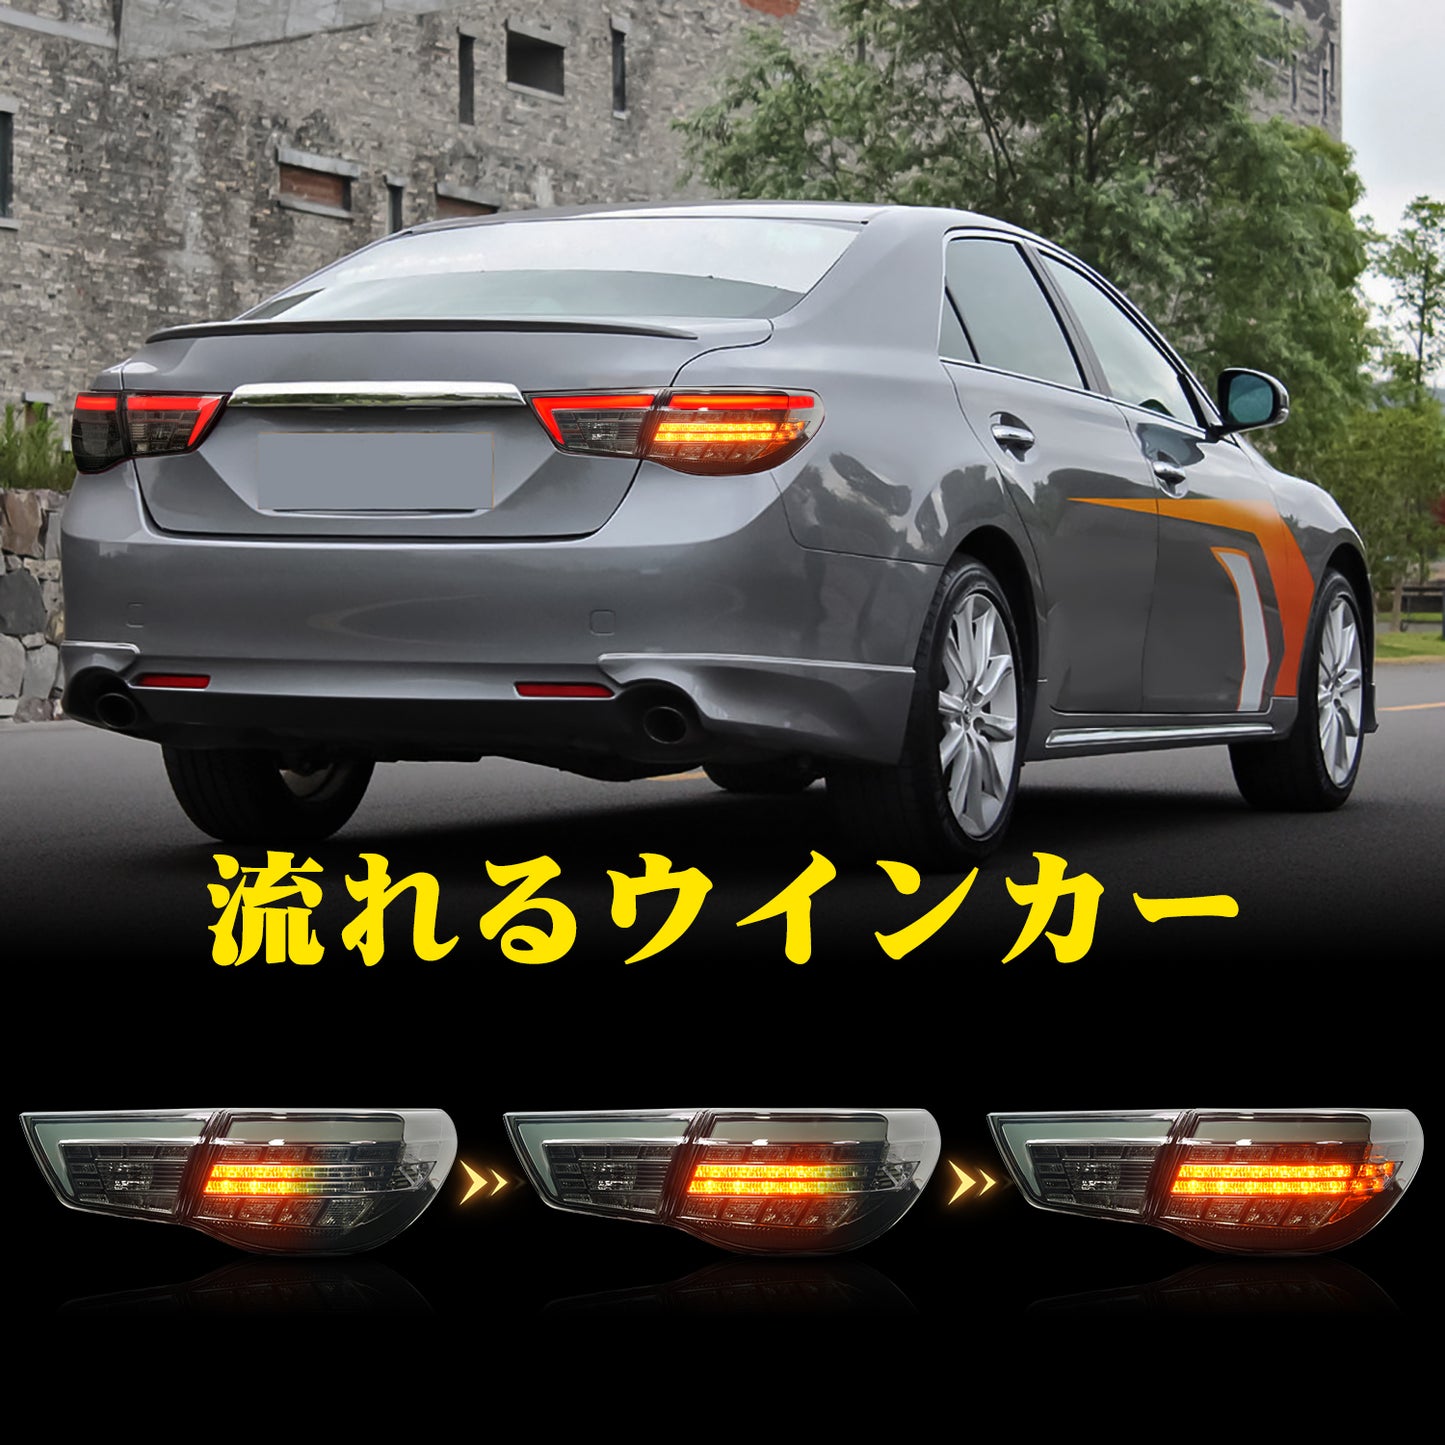 Full LED Tail Lights Assembly For Toyota Reiz/Mark X 2010-2013